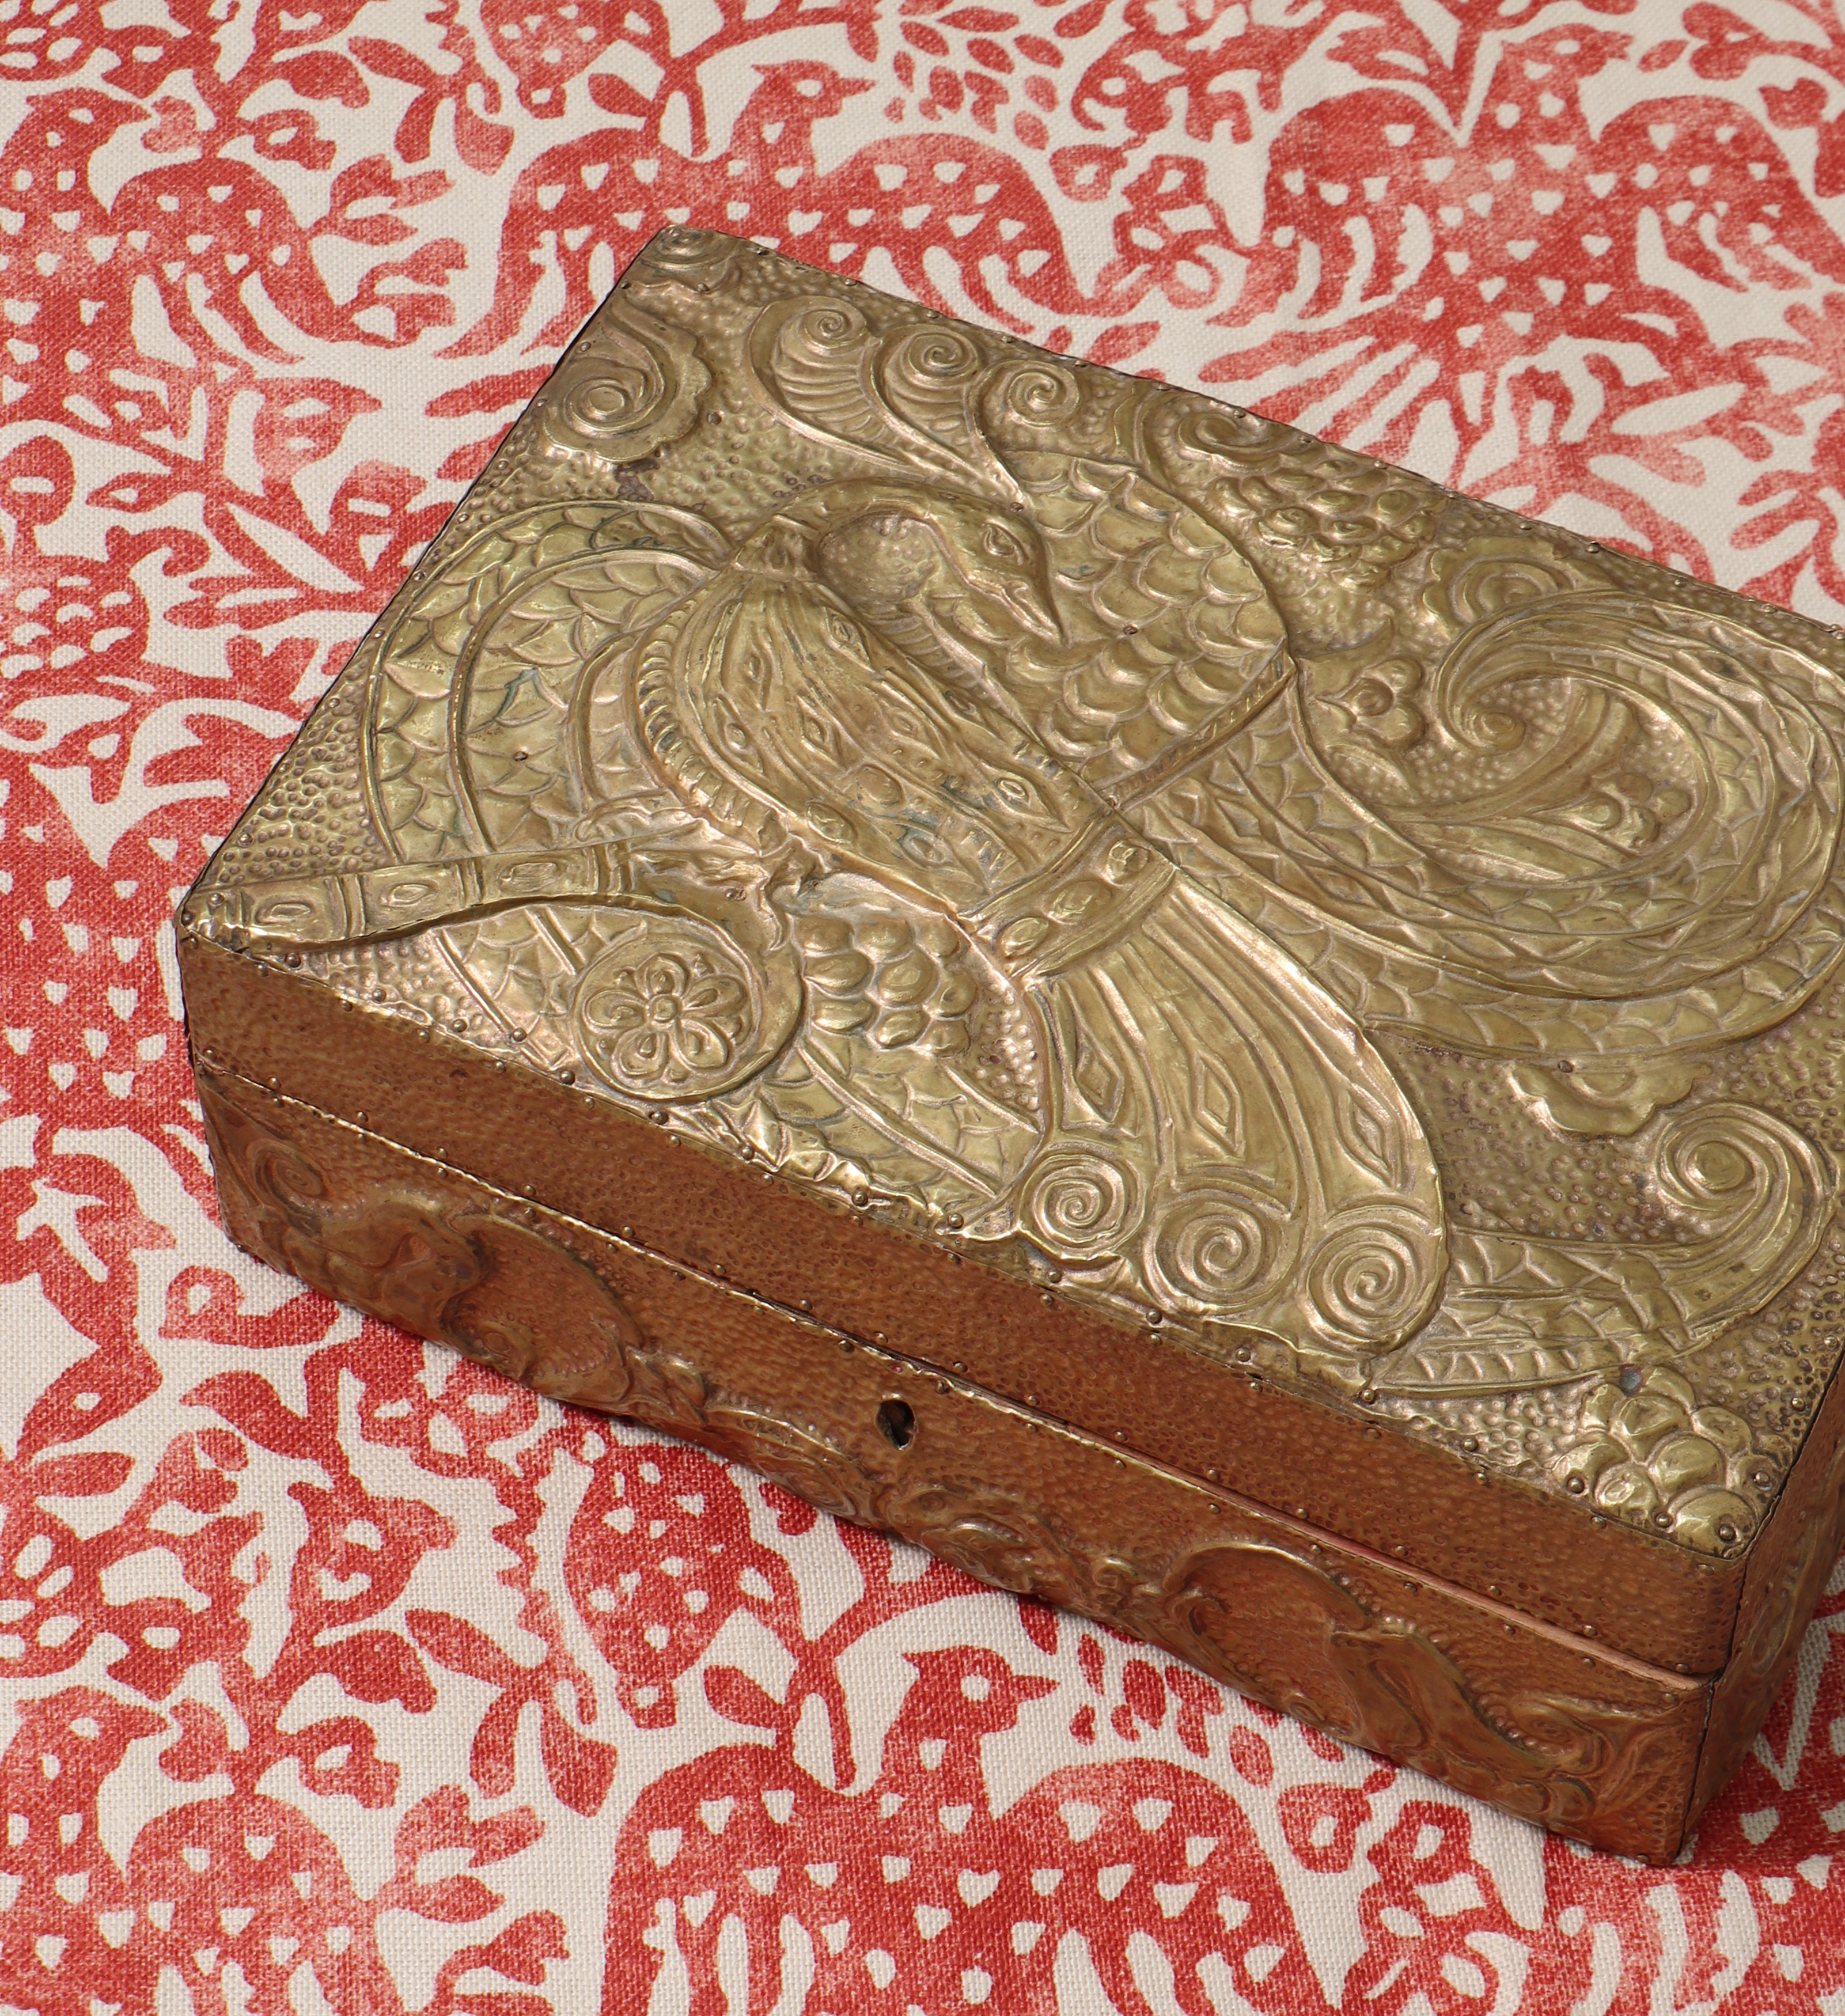 A Brass clad wooden box